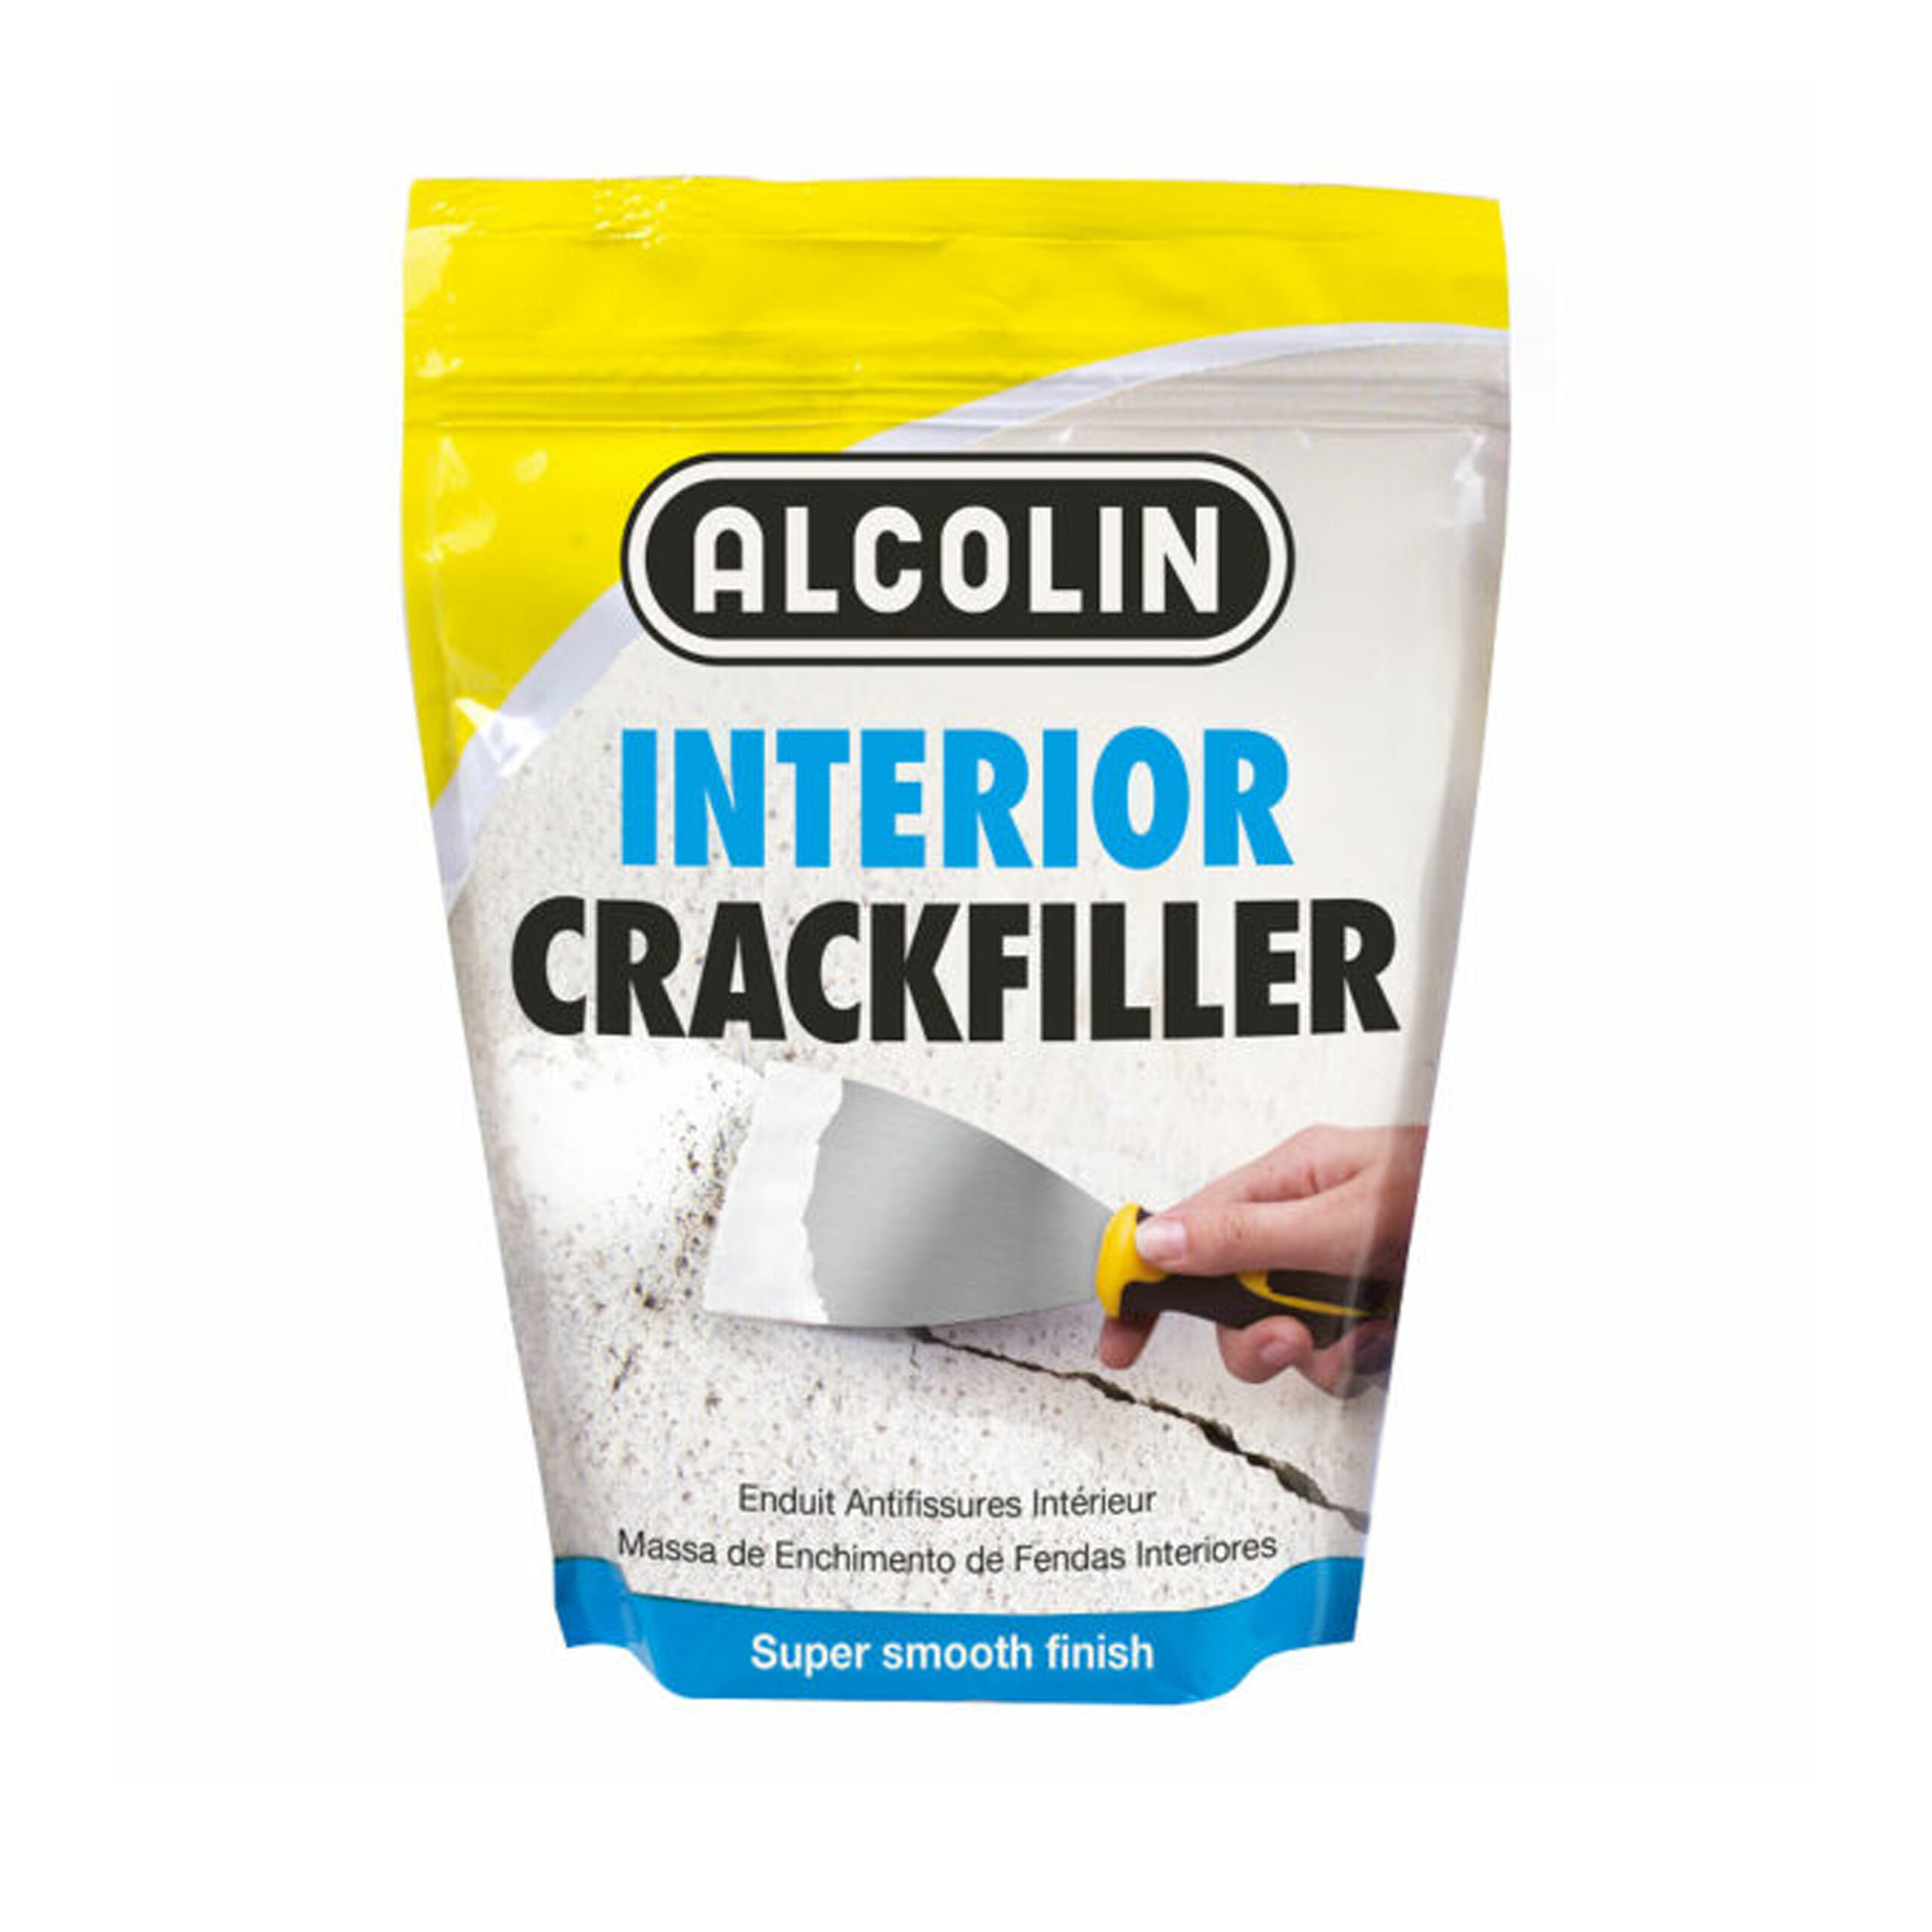 ALCOLIN CRACKFILLER INTERIOR 500g